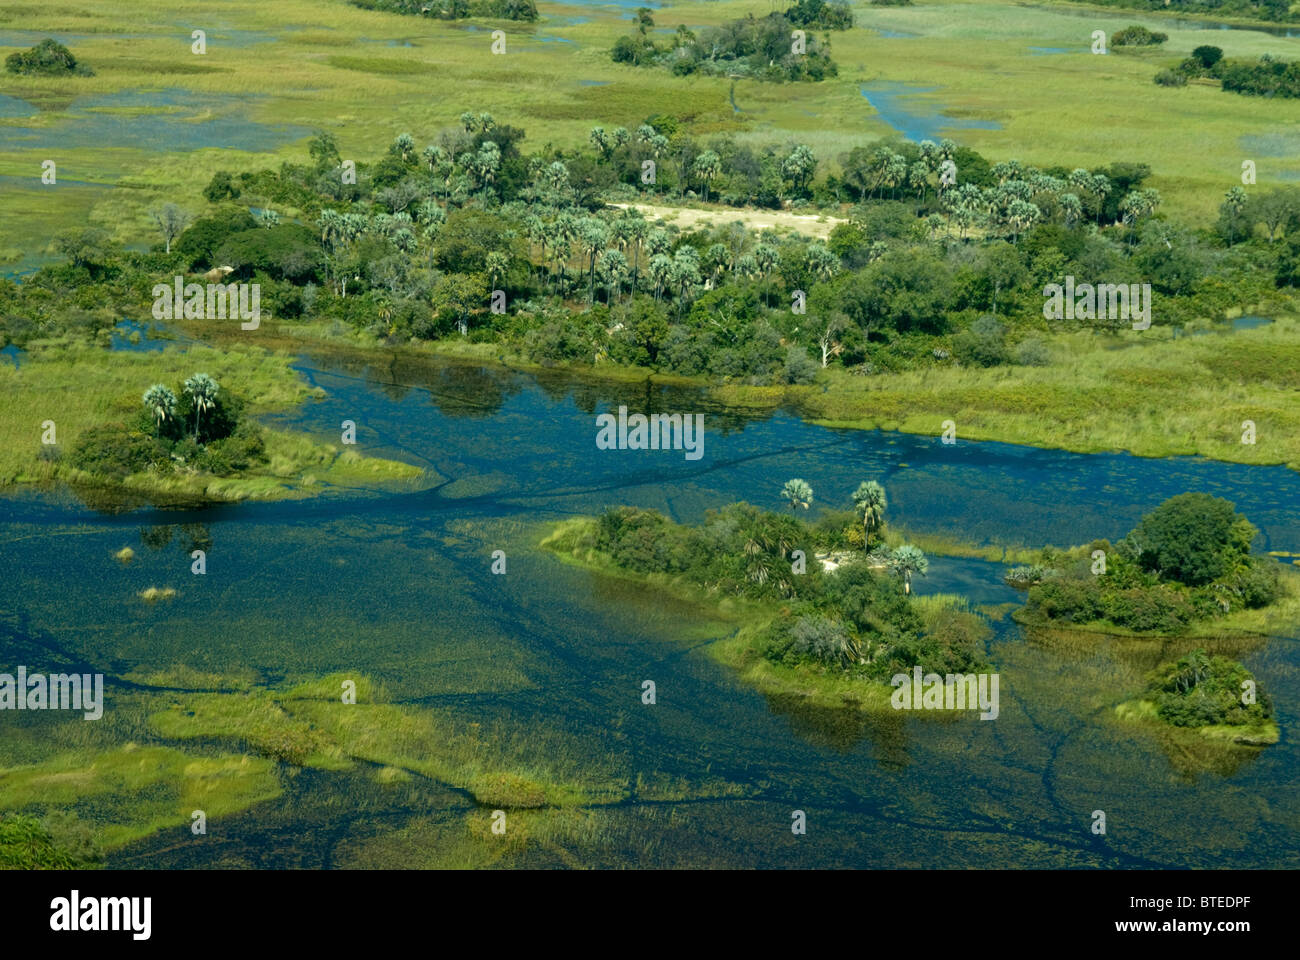 Vue panoramique aérienne du delta de l'Okavango montrant les îles et d'eau Banque D'Images